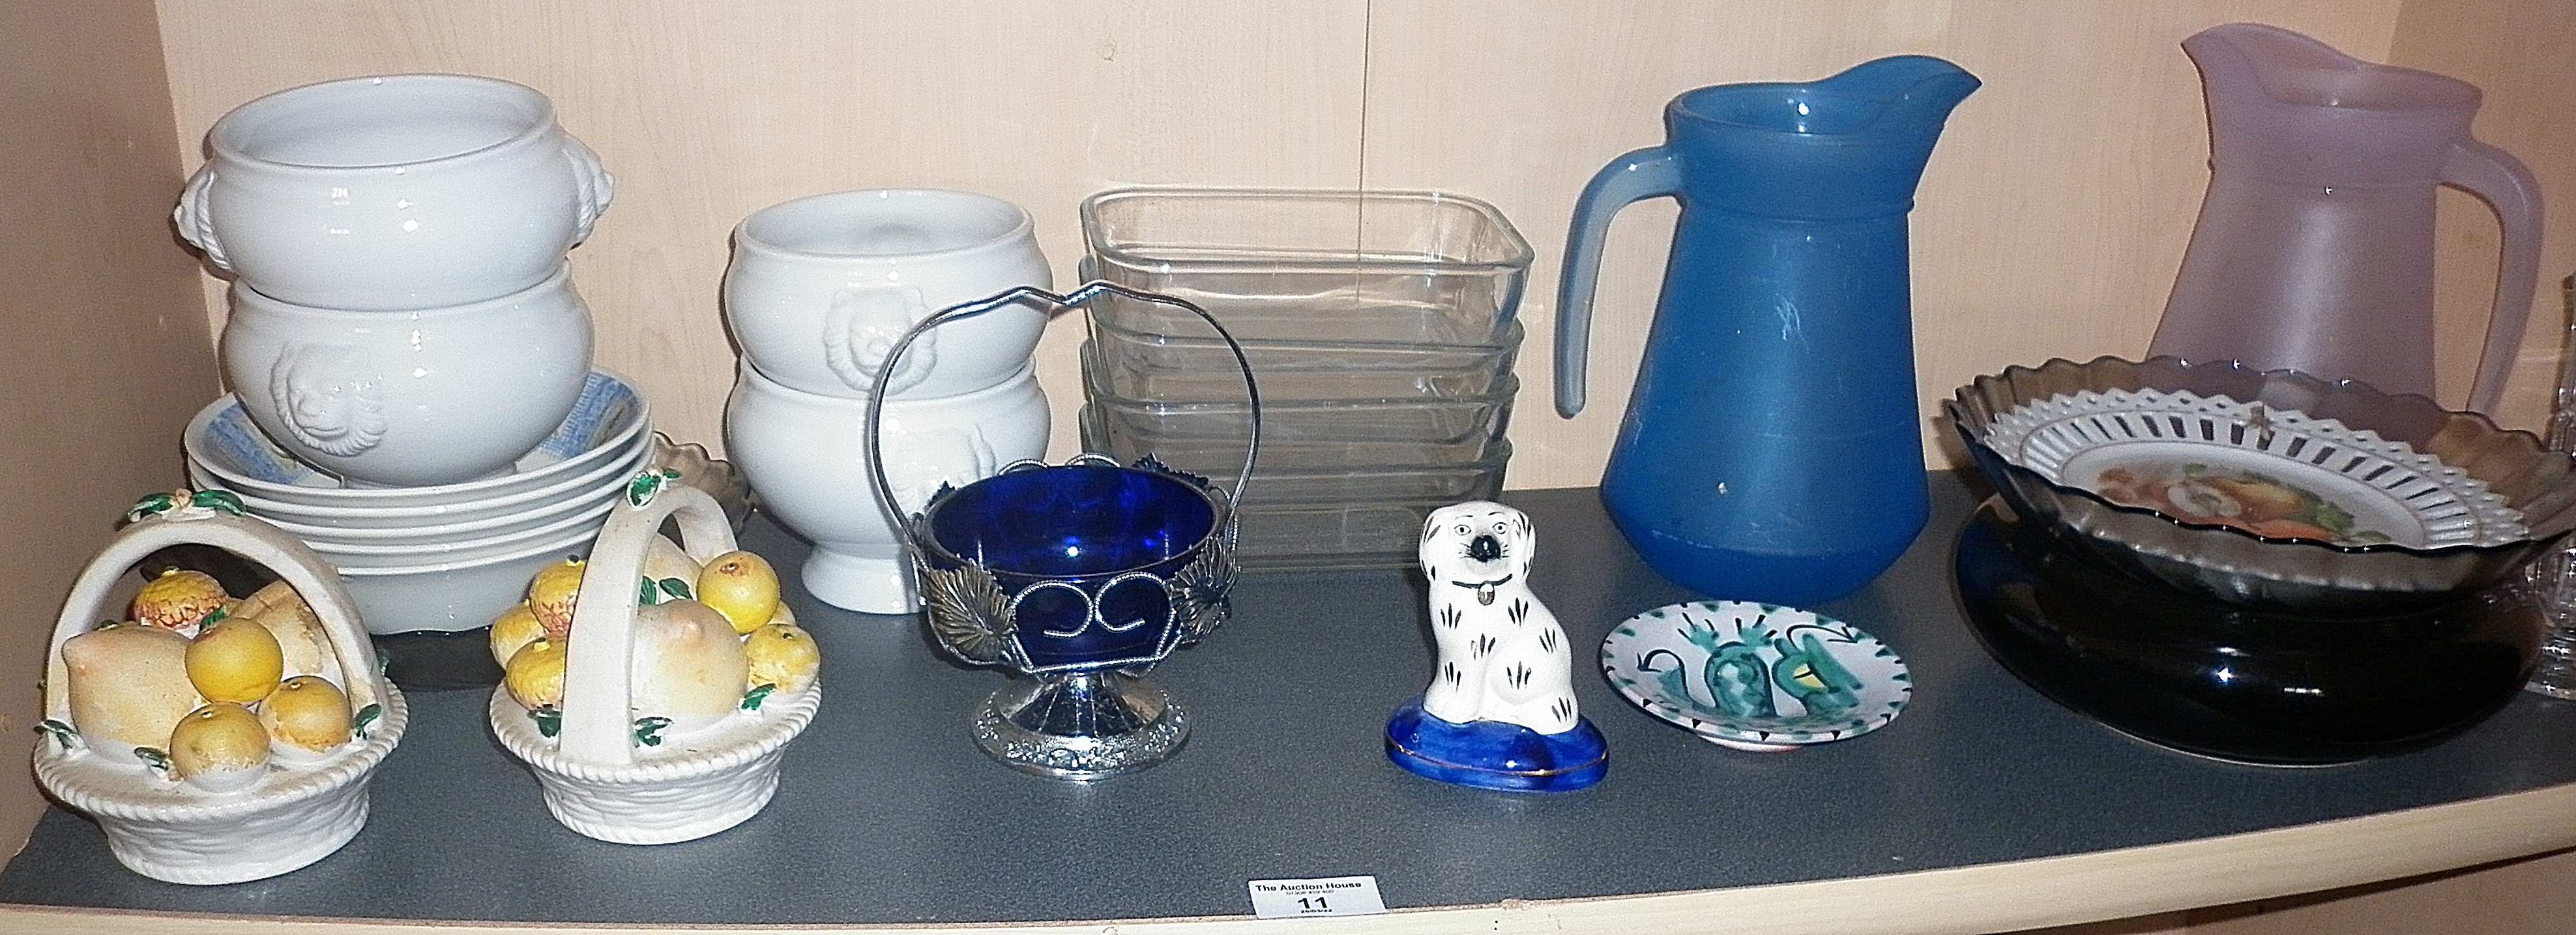 Shelf of glass and ceramics